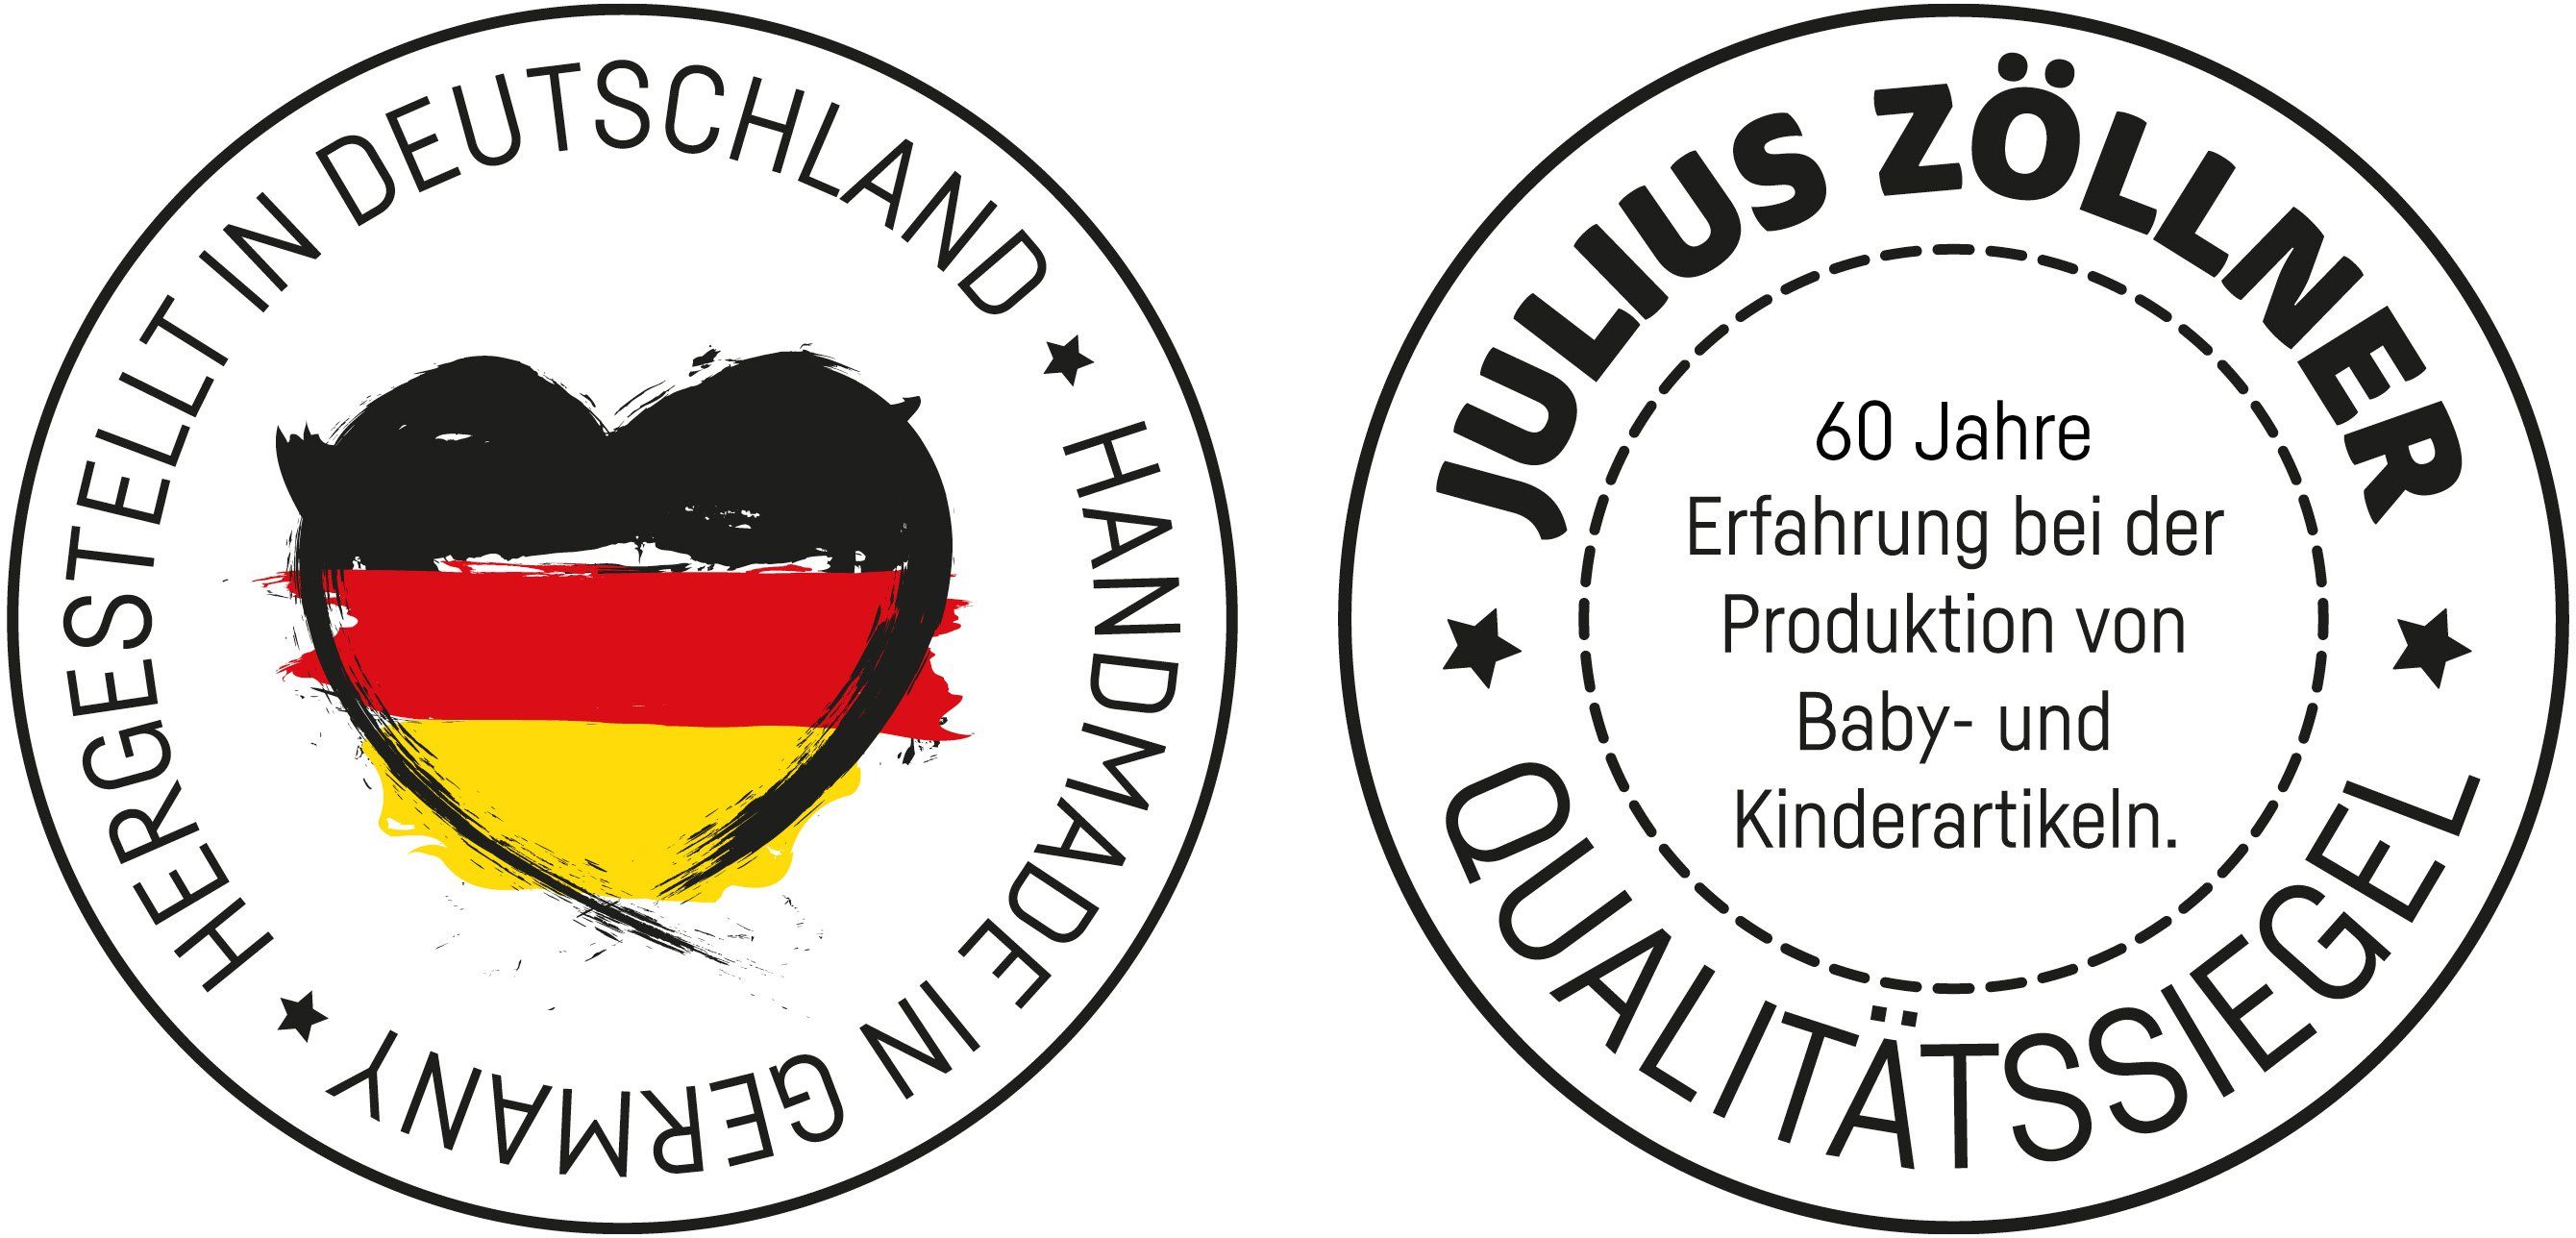 Olia, Germany Zöllner Julius in Wickelauflage 2-Keil, Made